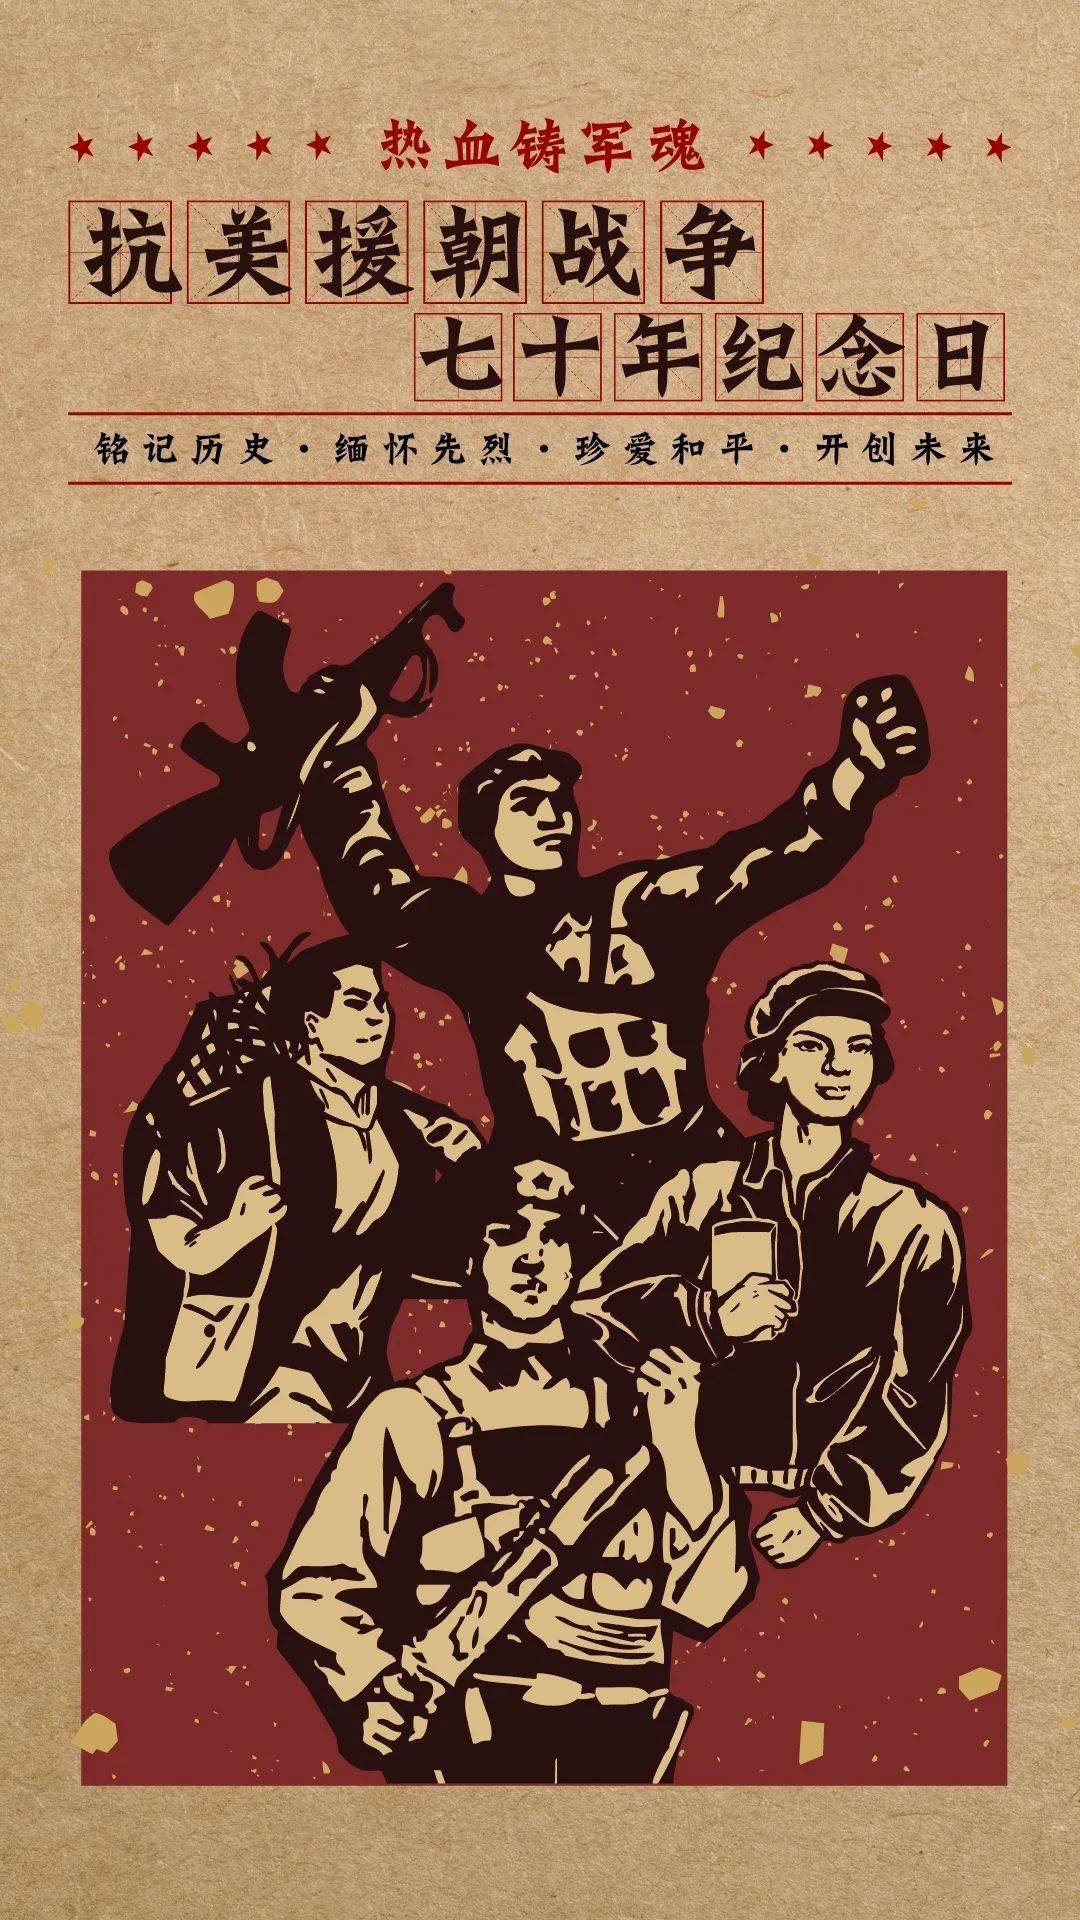 齐鲁工大纪念抗美援朝胜利70周年宣传海报展览